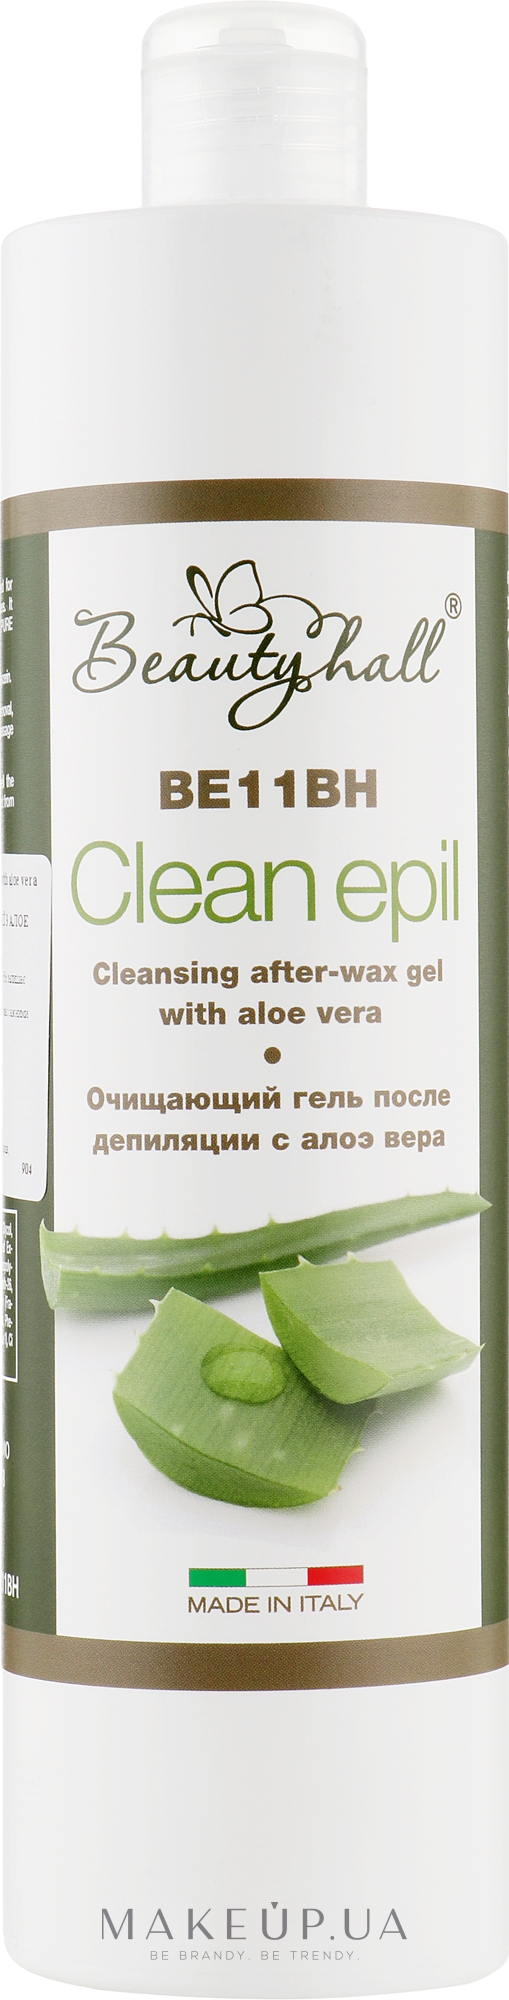 Очищающий гель после депиляции с алое вера - Beautyhall Clean Epil Cleansing After-Wax Gel — фото 500ml